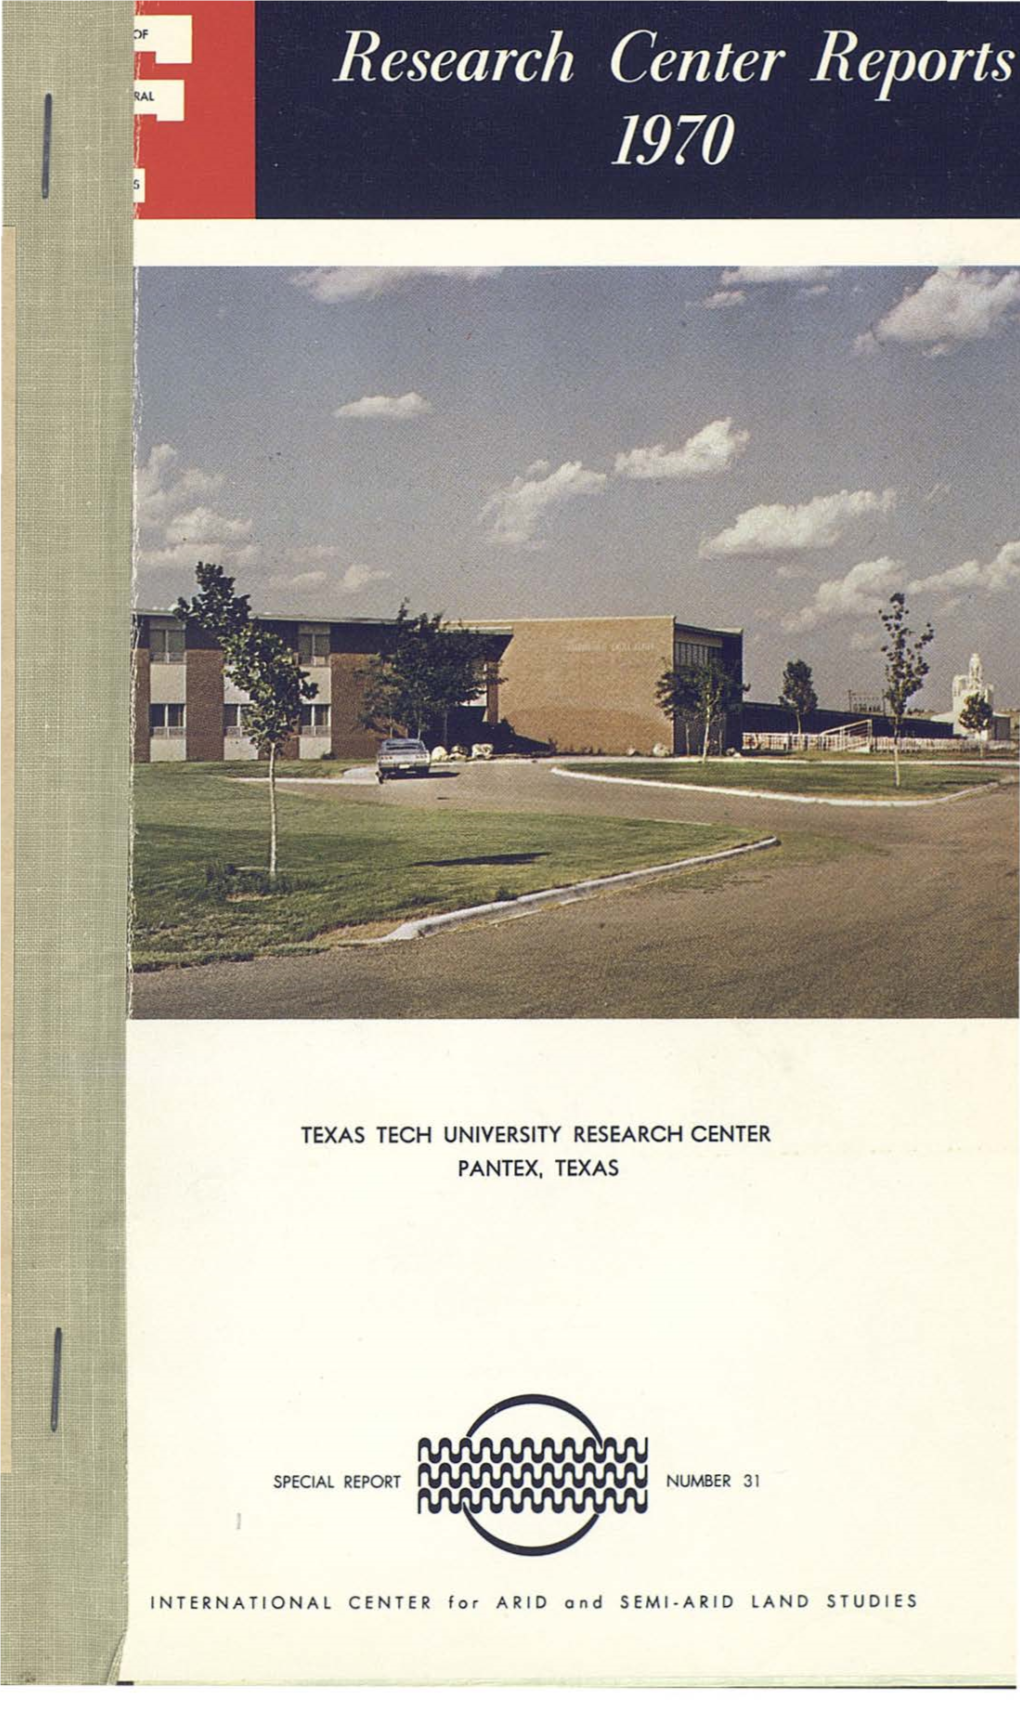 Texas Tech University Research Center Pantex, Texas